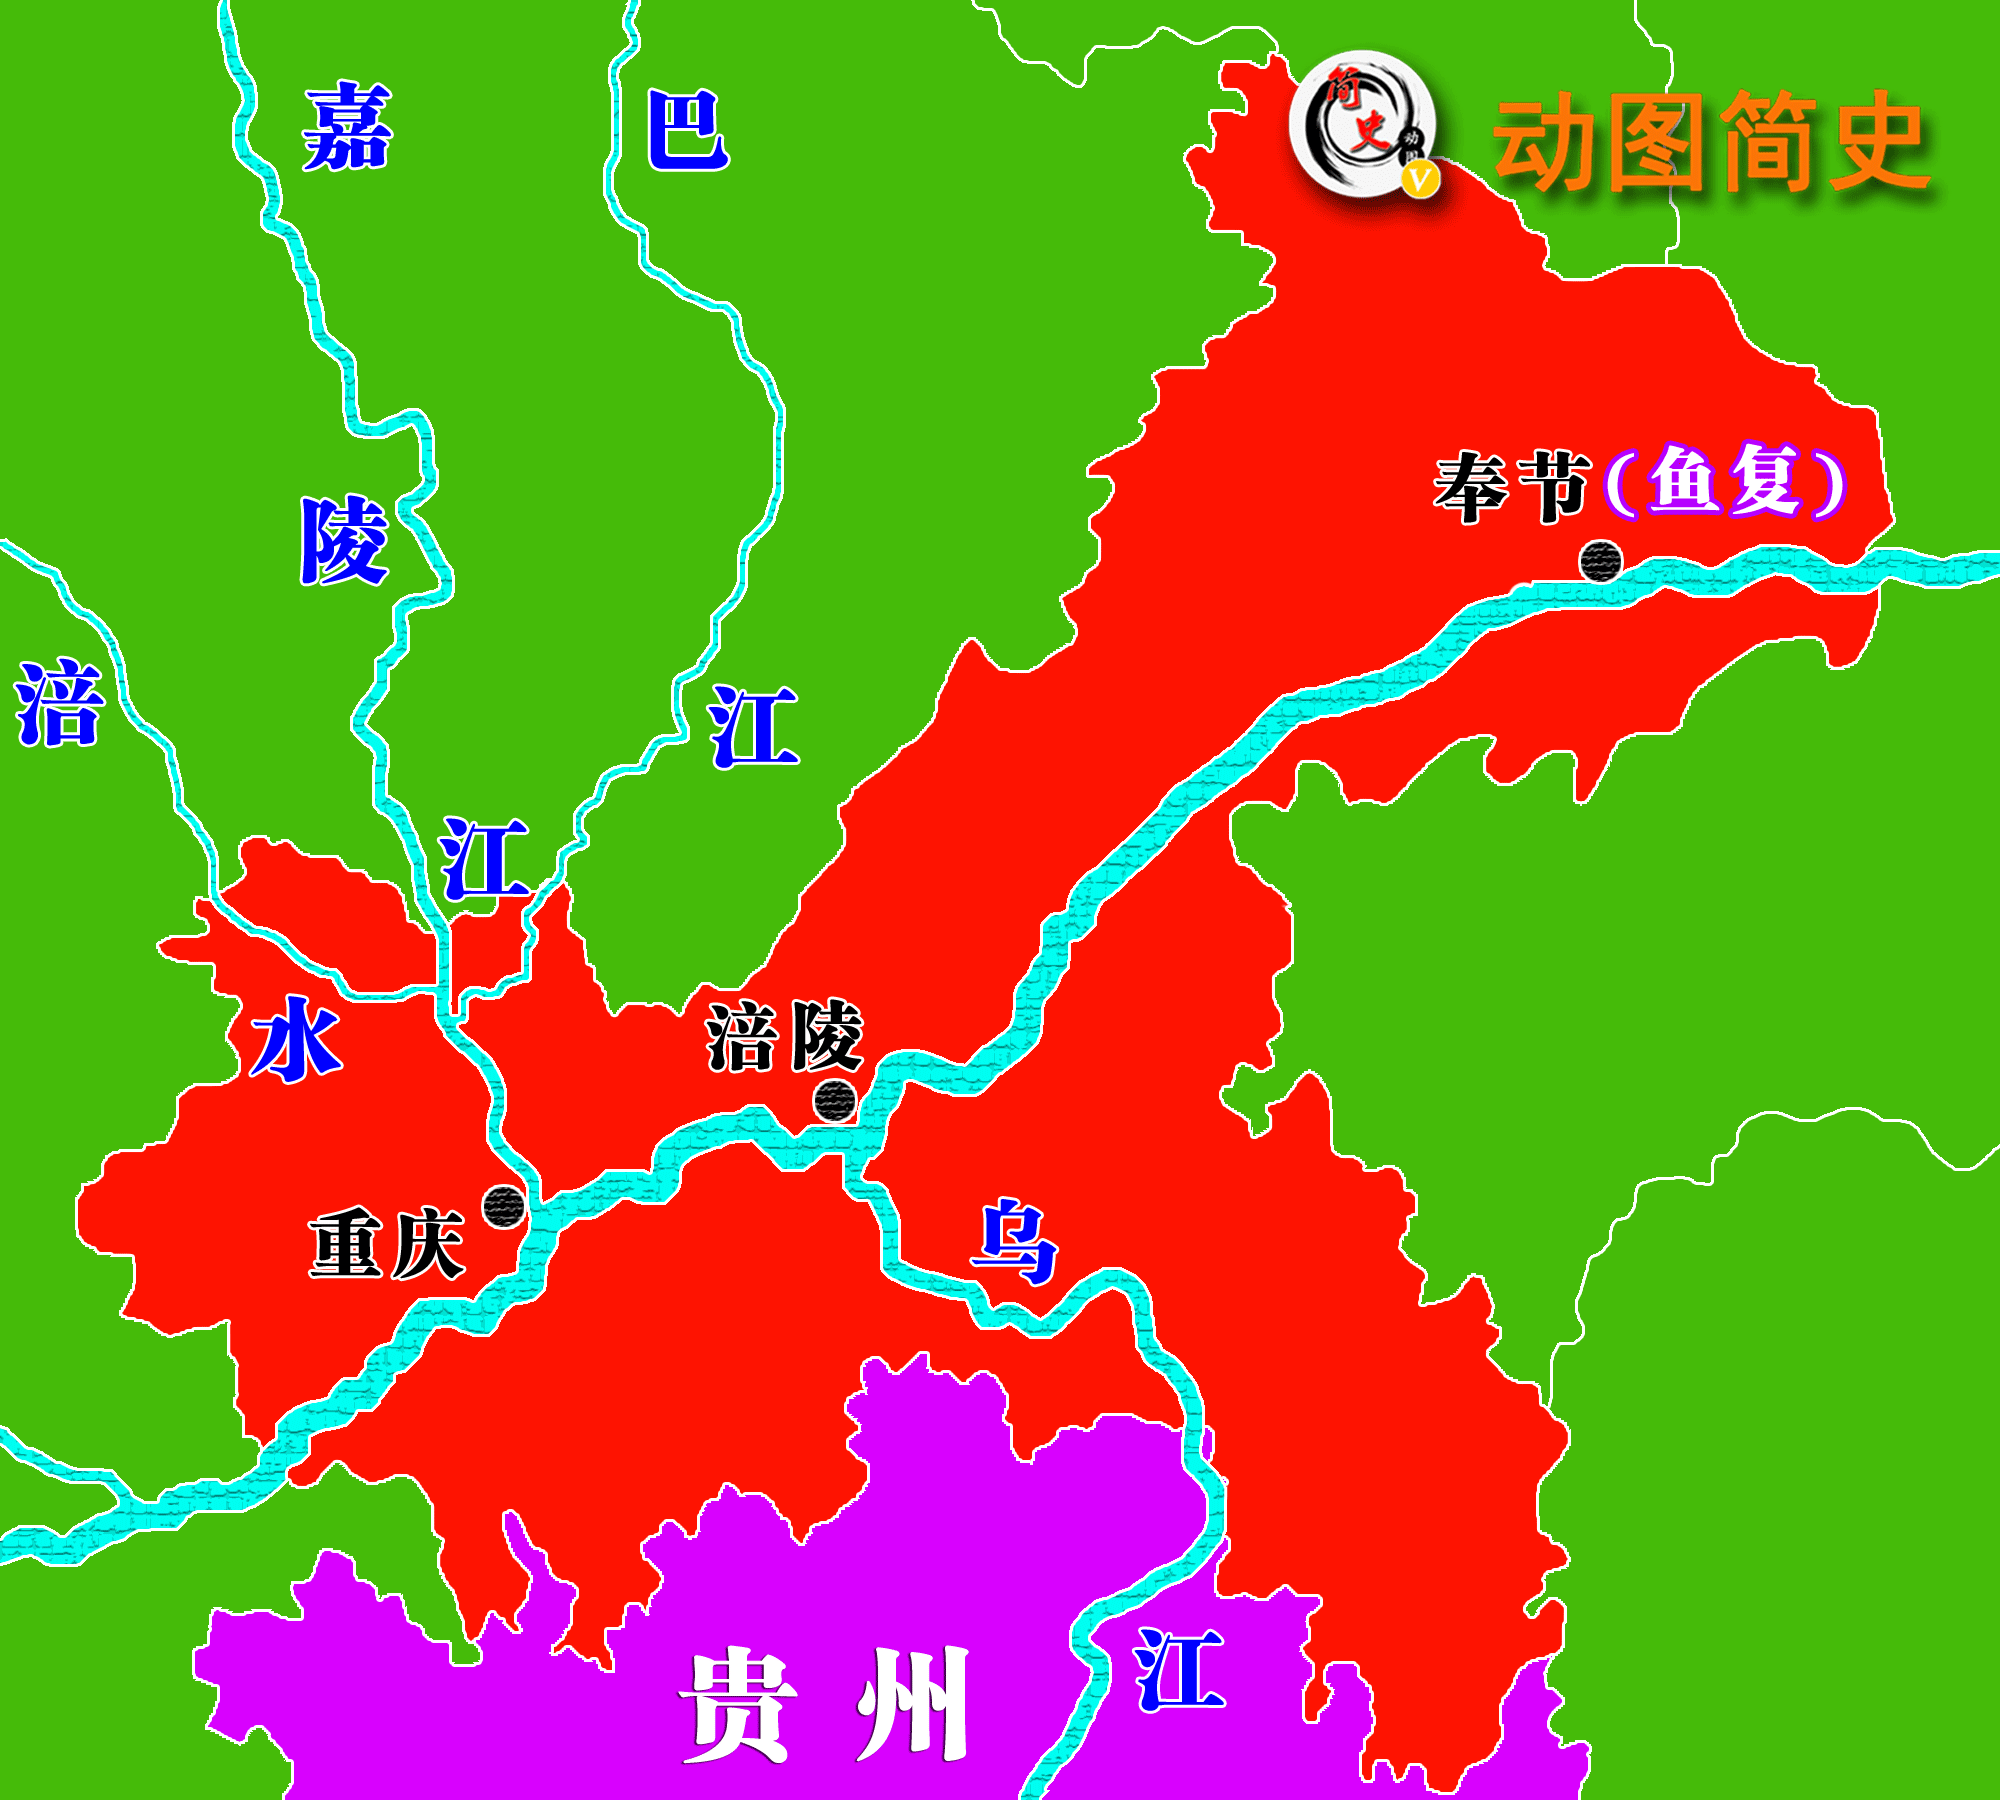 该突出部基本与乌江下游流域重合,而涪陵正是乌江与长江的交汇之地